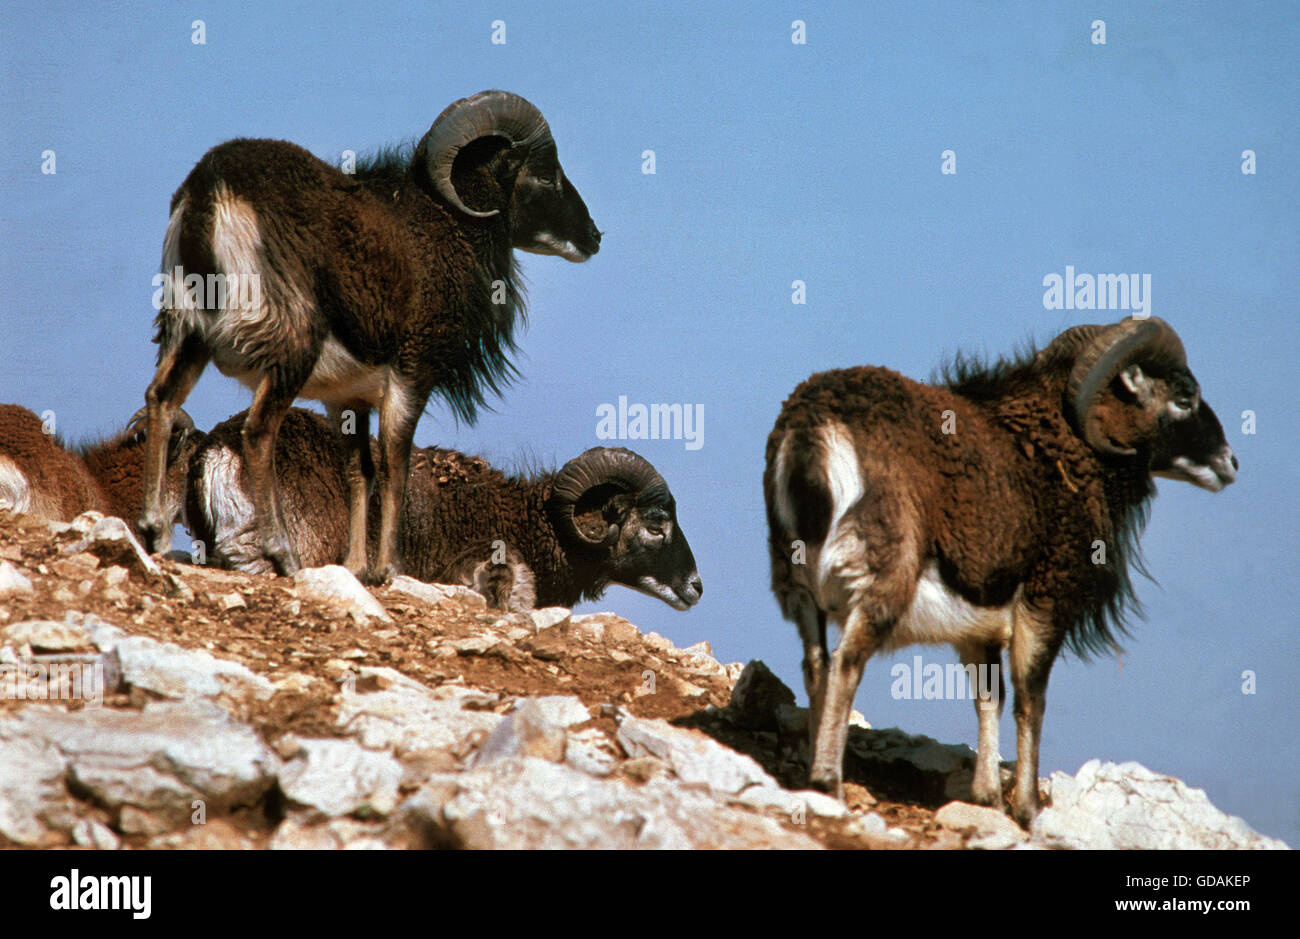 European Mouflon Sheep, ovis ammon, Group standing on Rocks Stock Photo